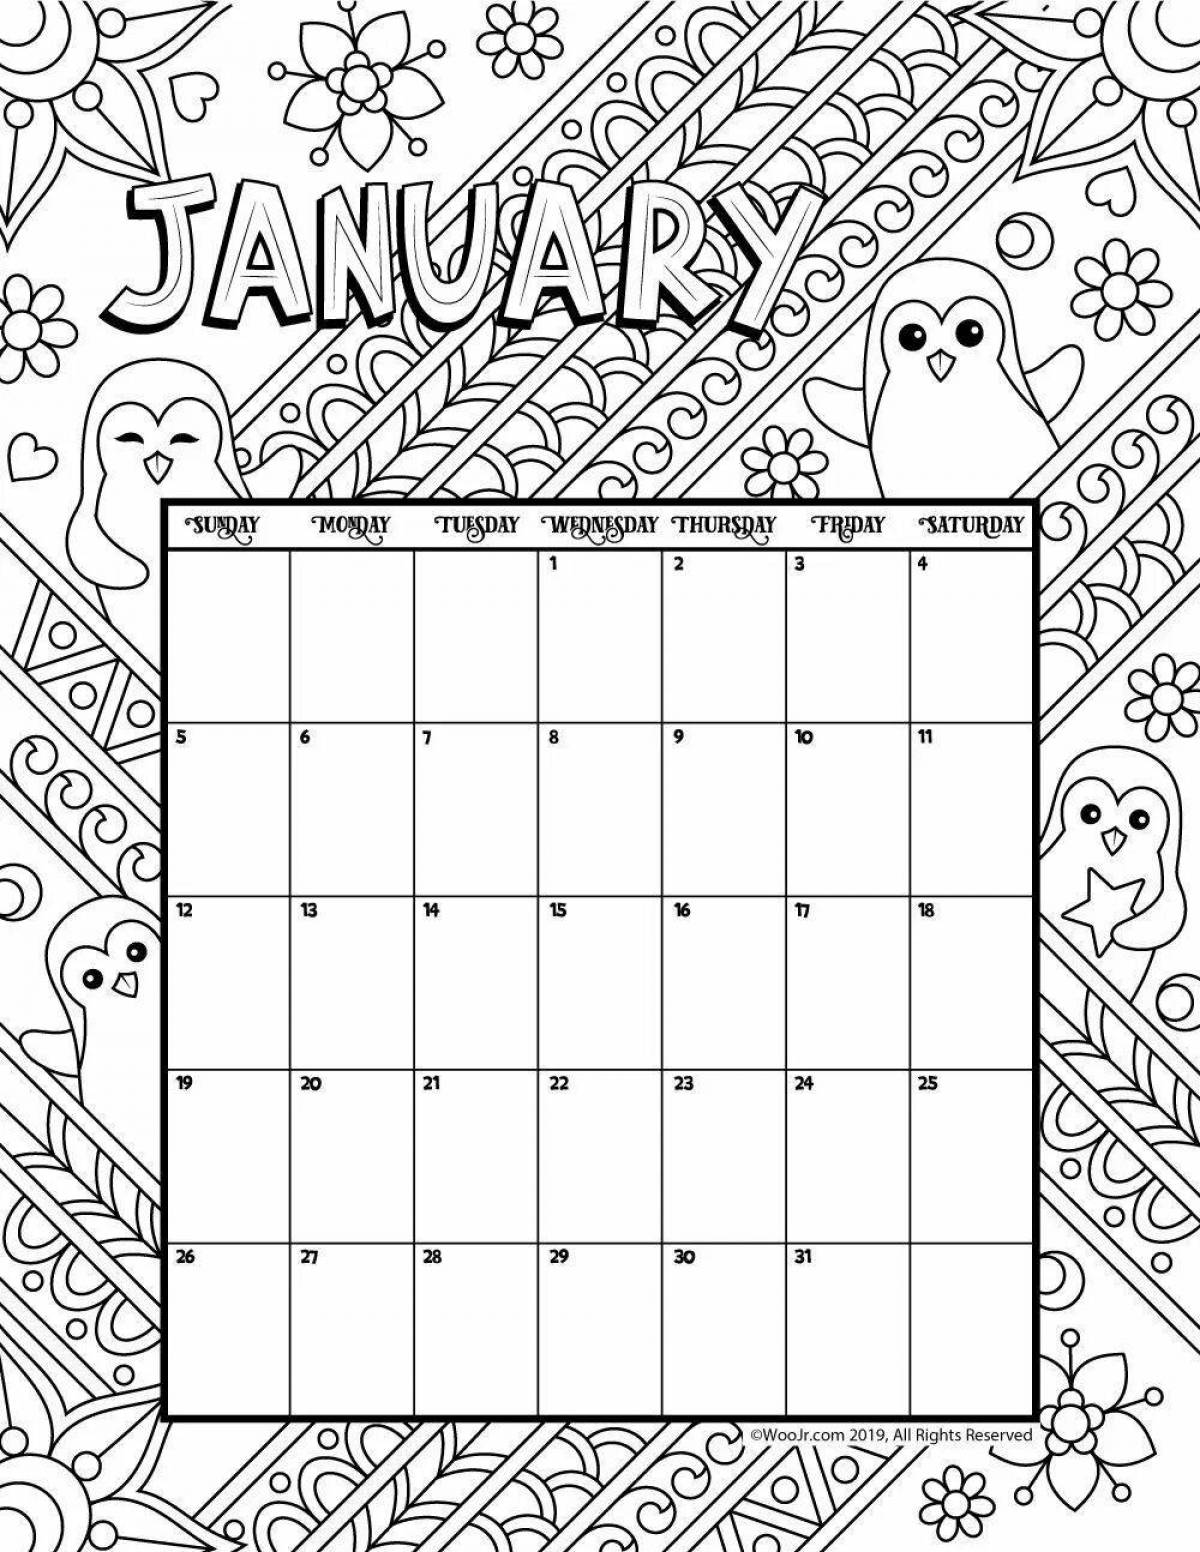 Fun coloring calendar for kids